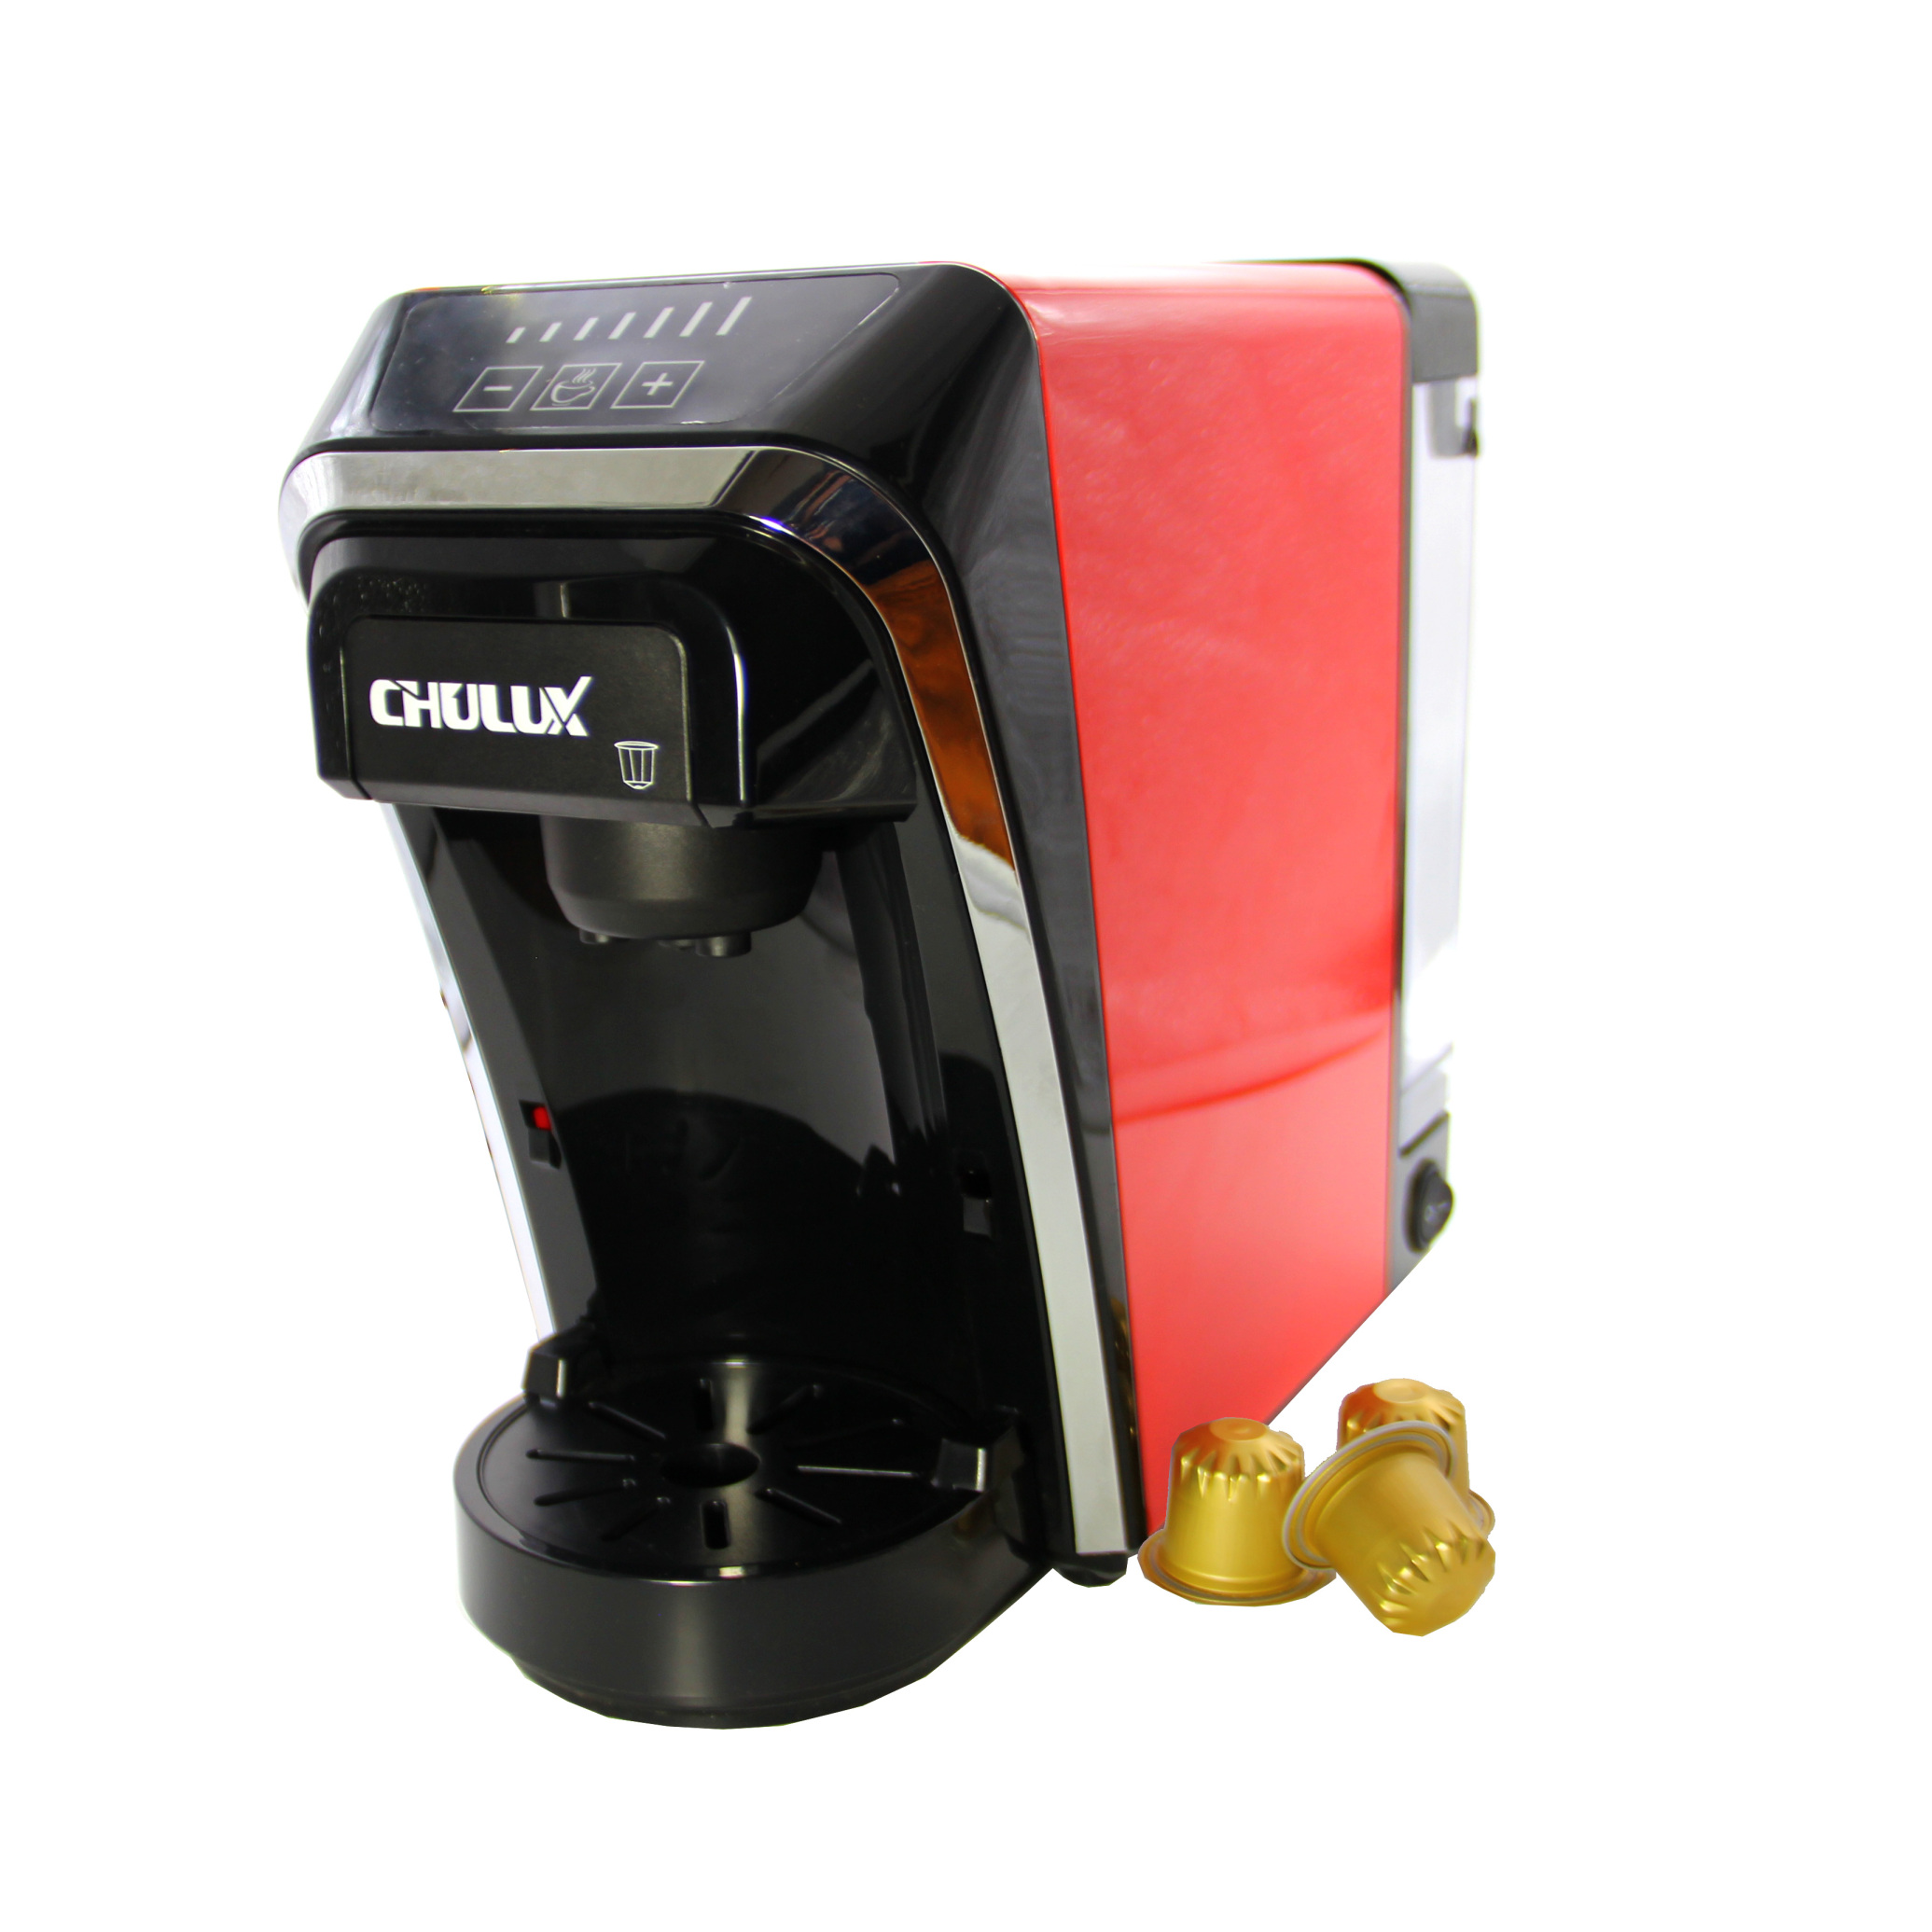  دستگاه اسپرسو ساز کپسول خور Chulux | نسپرسو خور بزرگ | دستگاه قهوه ساز نسپرسو | نسپرسپ ساز ارزان | خرید دستگاه قهوه ساز 